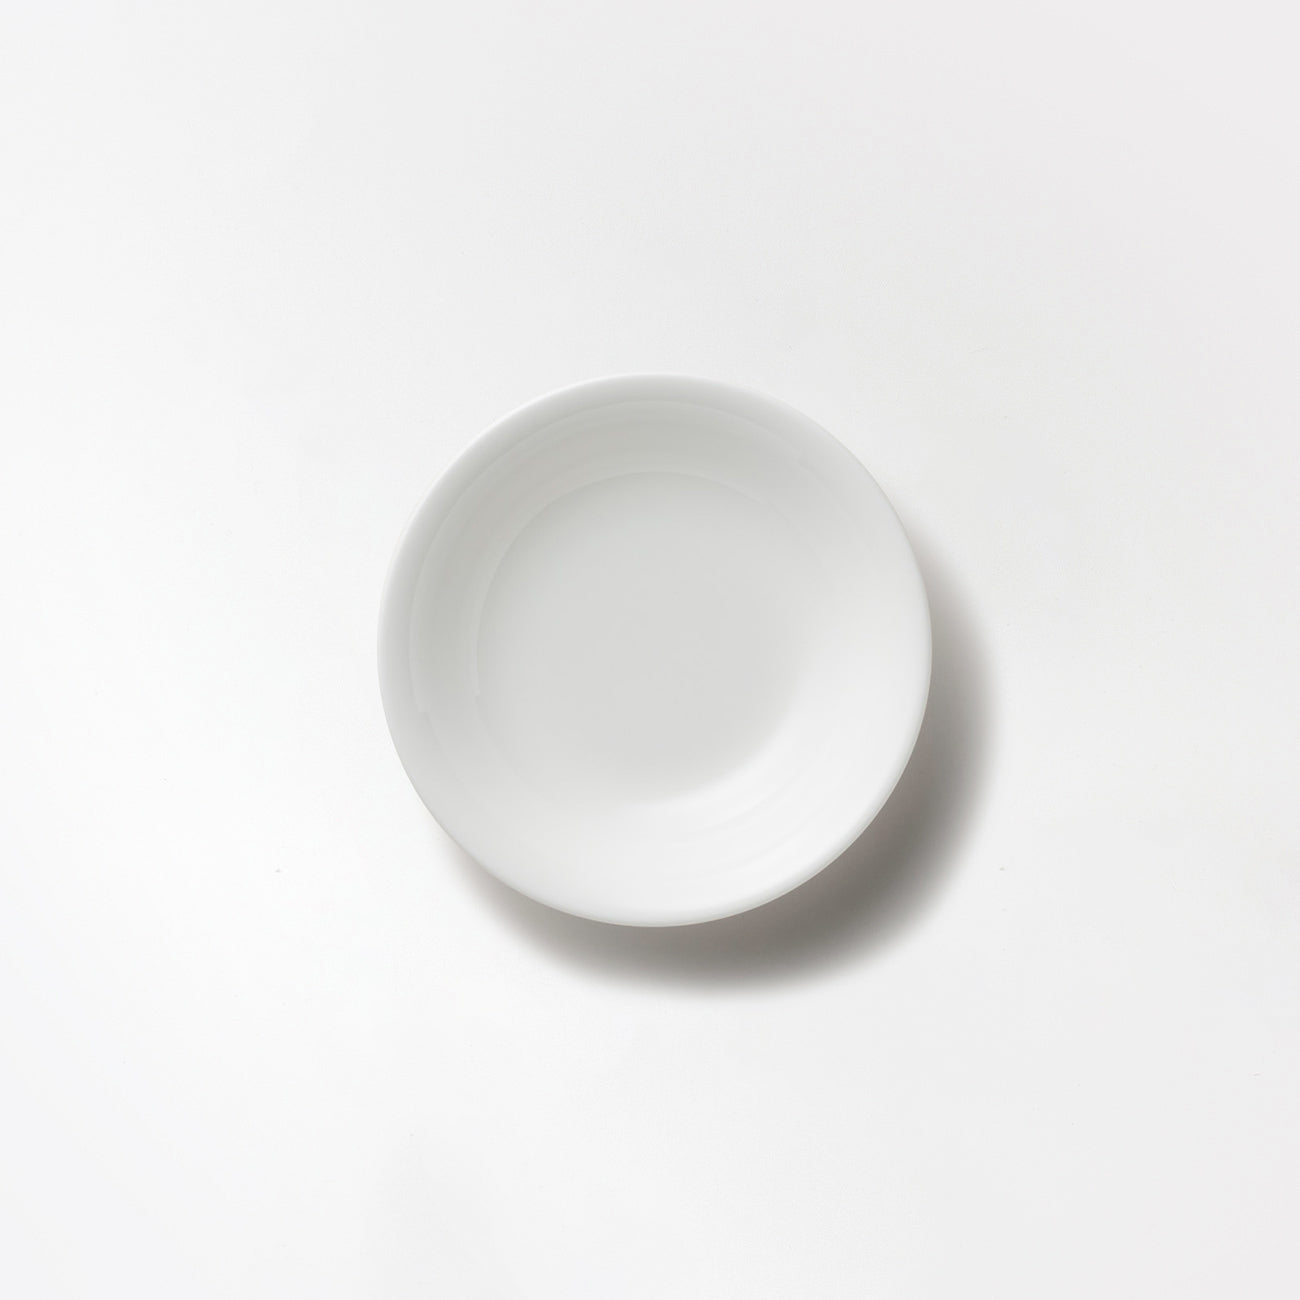 【復興支援商品】14.5cmフルーツ皿